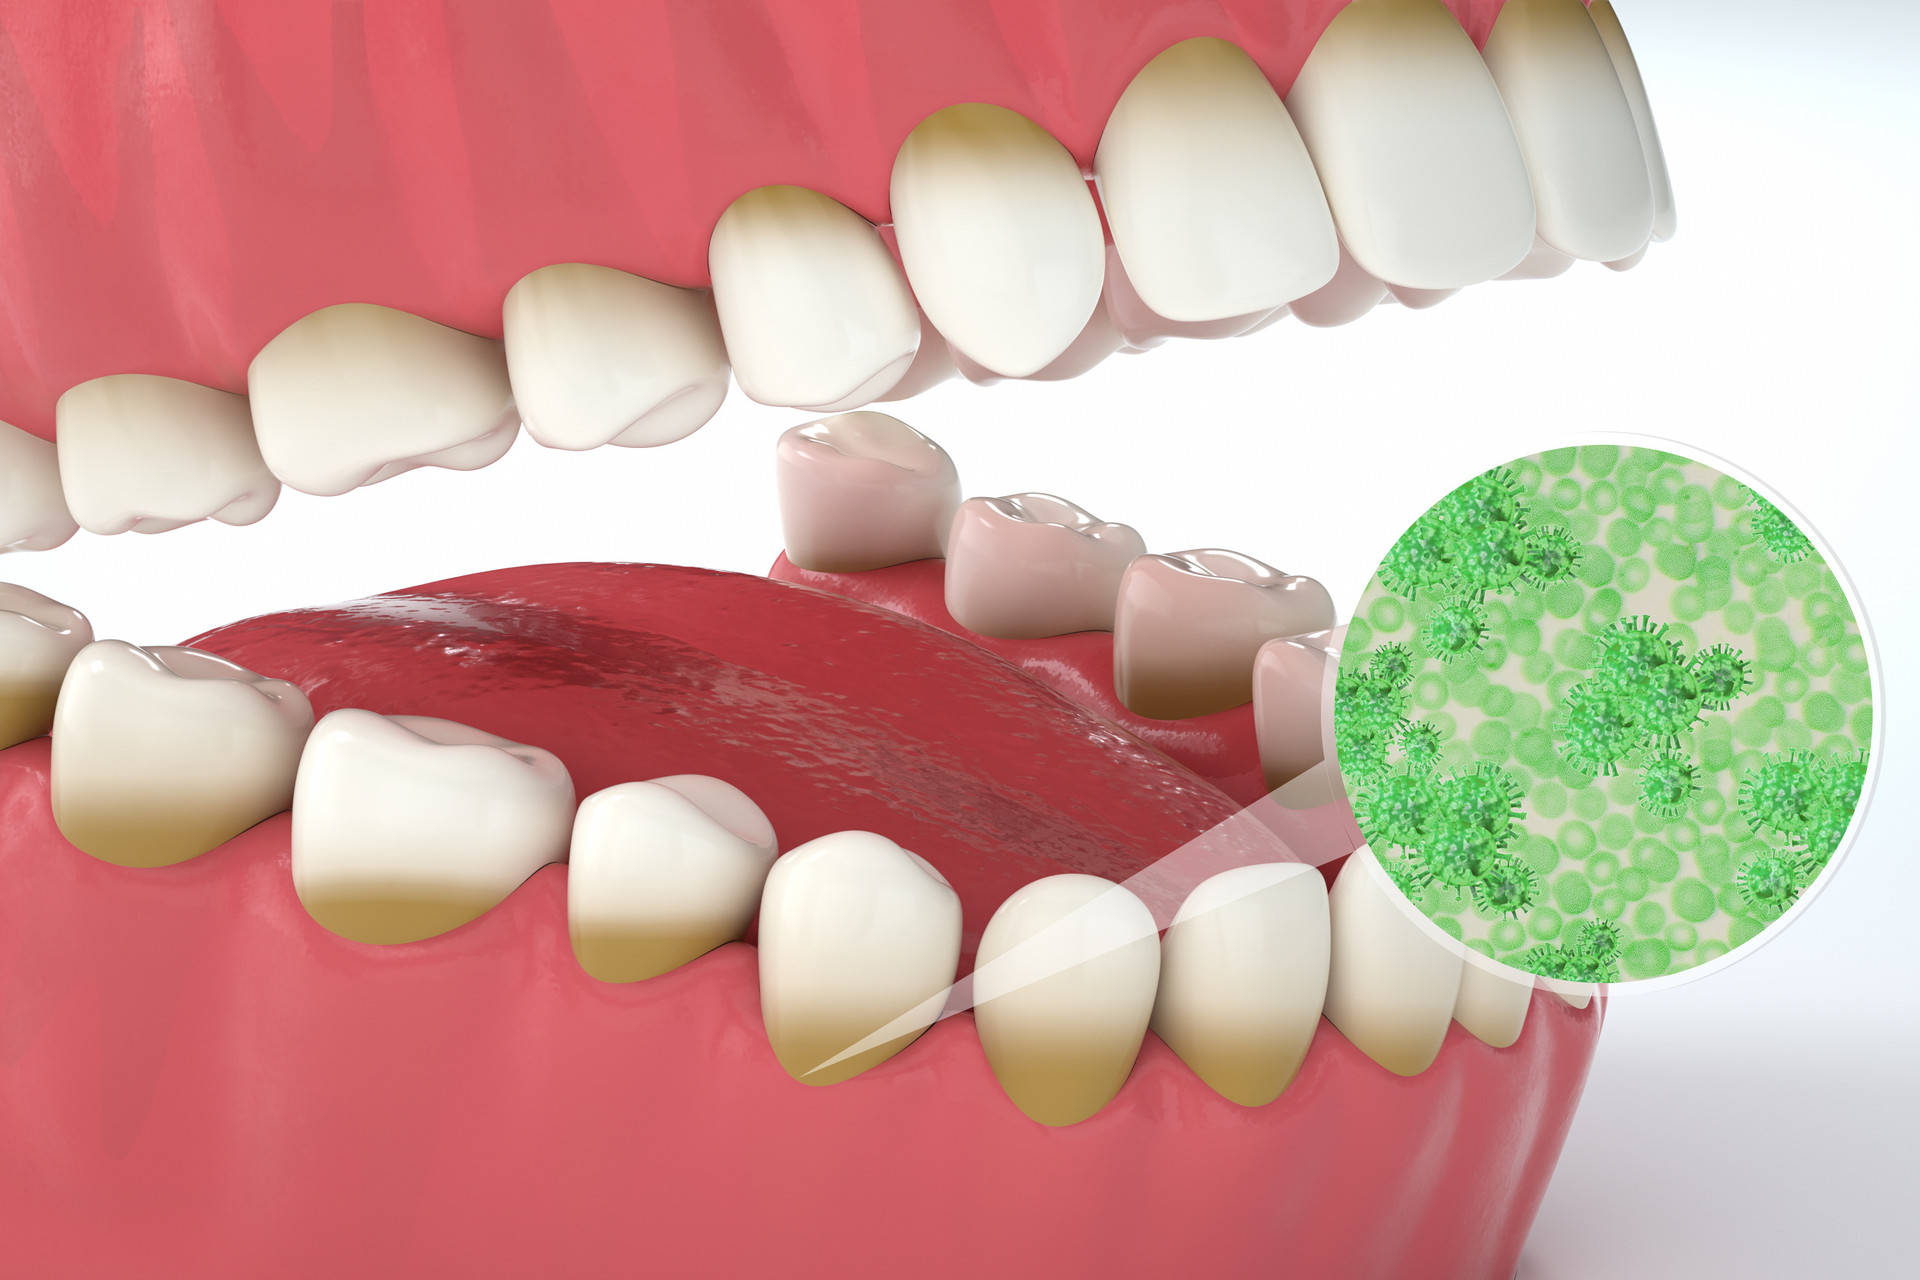 J Evid Based Dent Pract：纳米颗粒凝胶可有效提高姜黄素治疗复发性口角炎的疗效